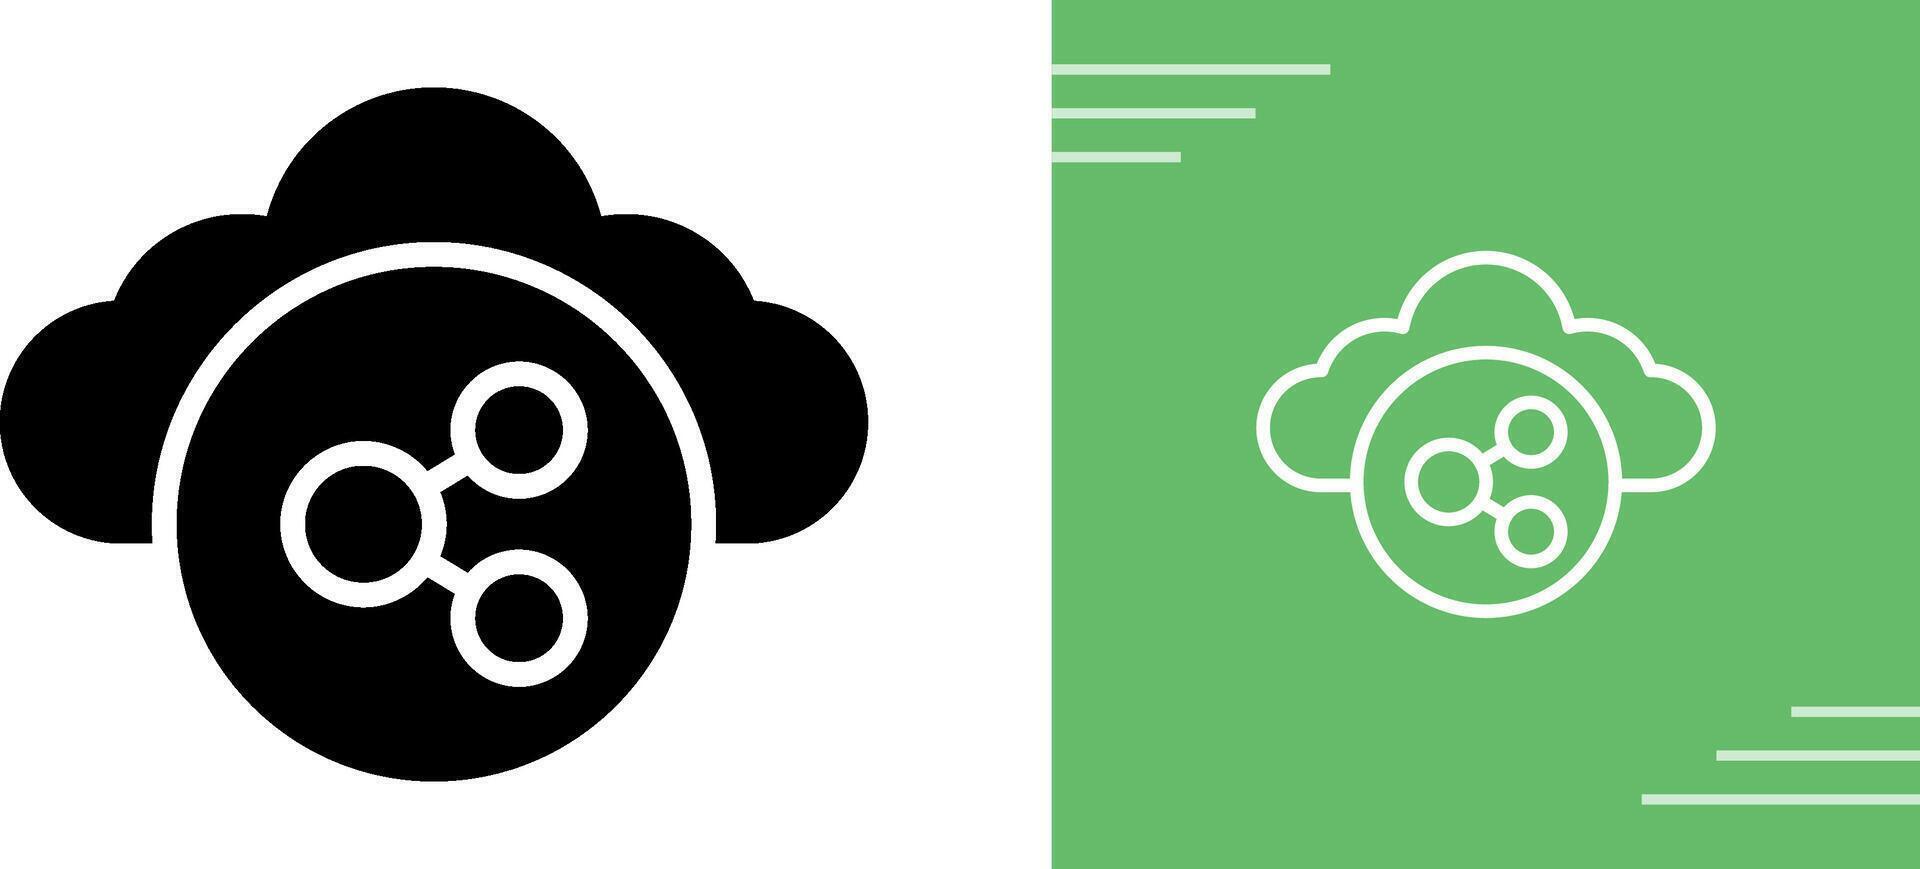 cloud computing vector icon